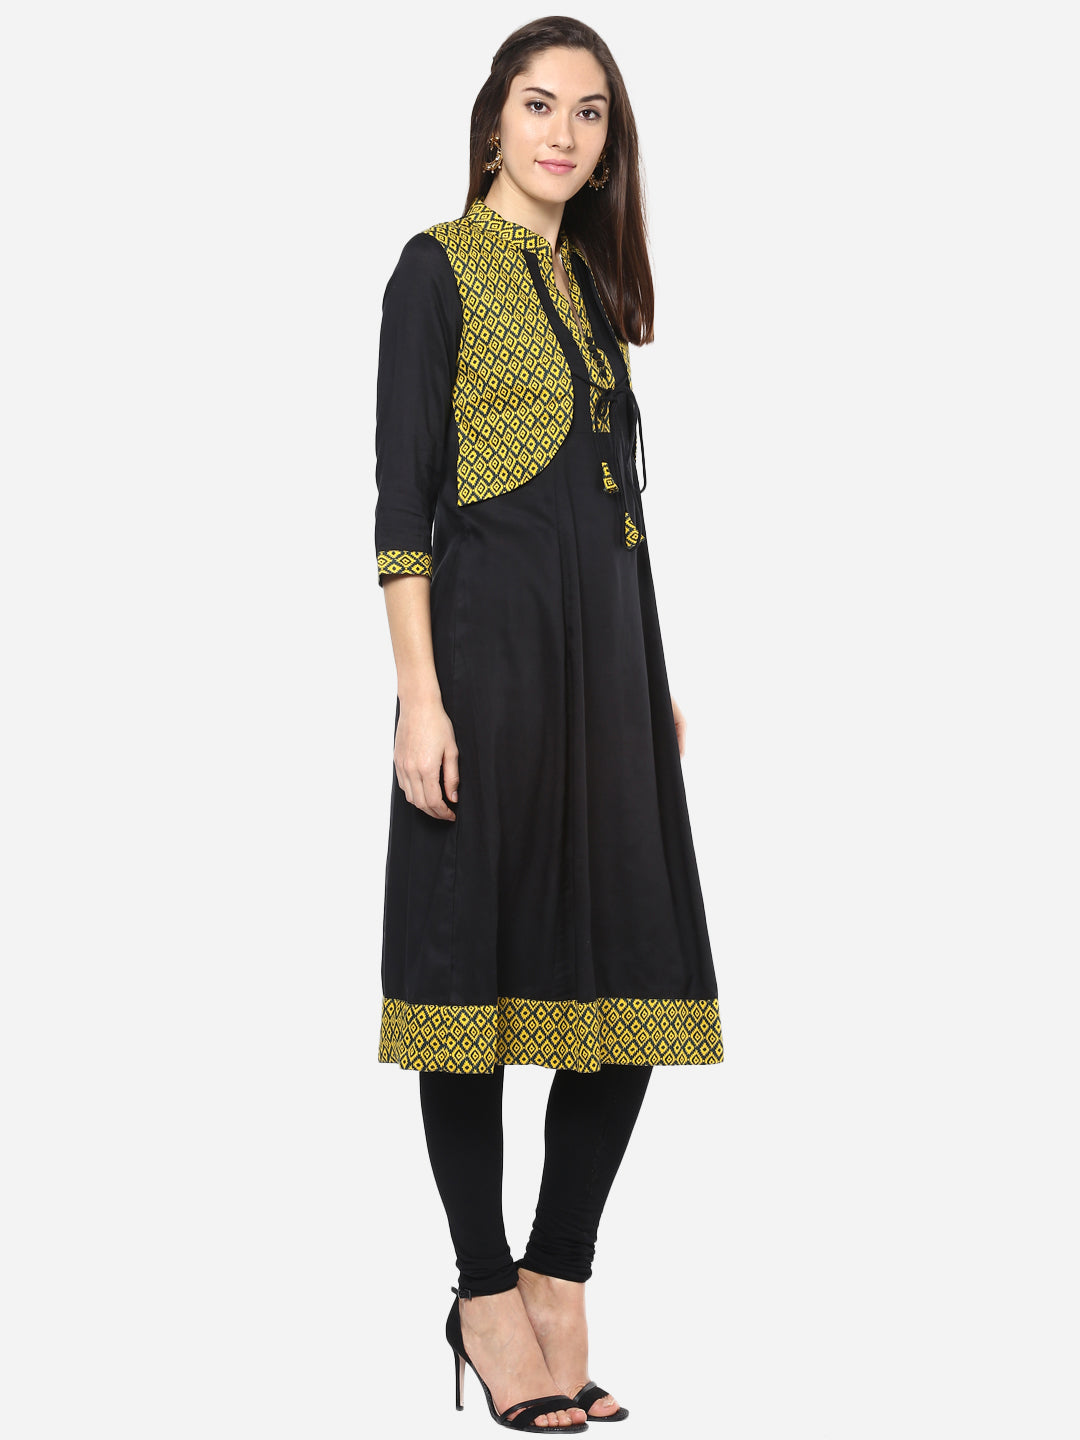 Women's Yellow and Black Jacket style Anarkali Kurti